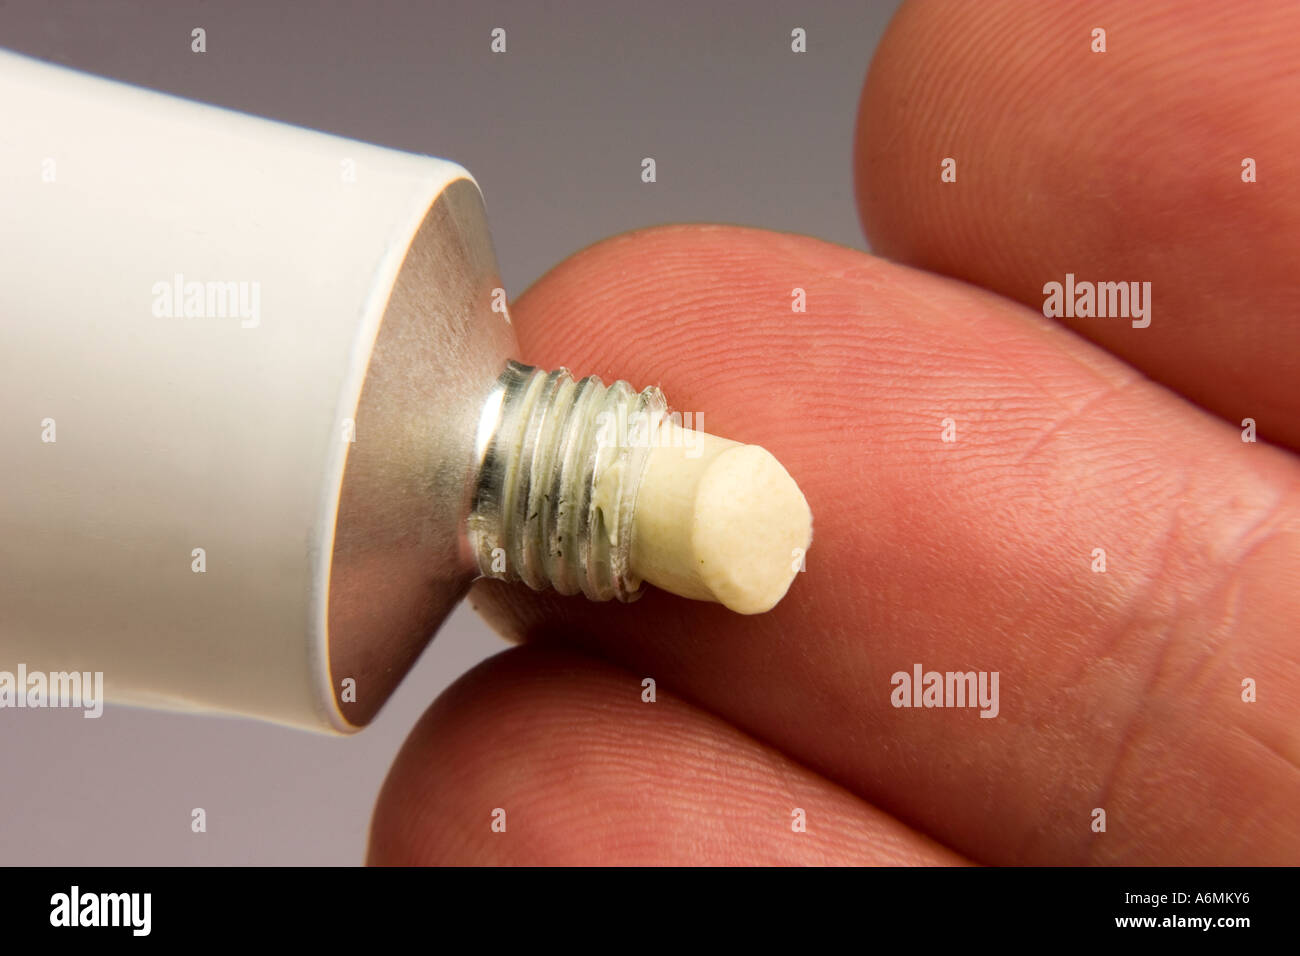 Anwendung der Salbe oder Creme auf fingertip Stockfoto